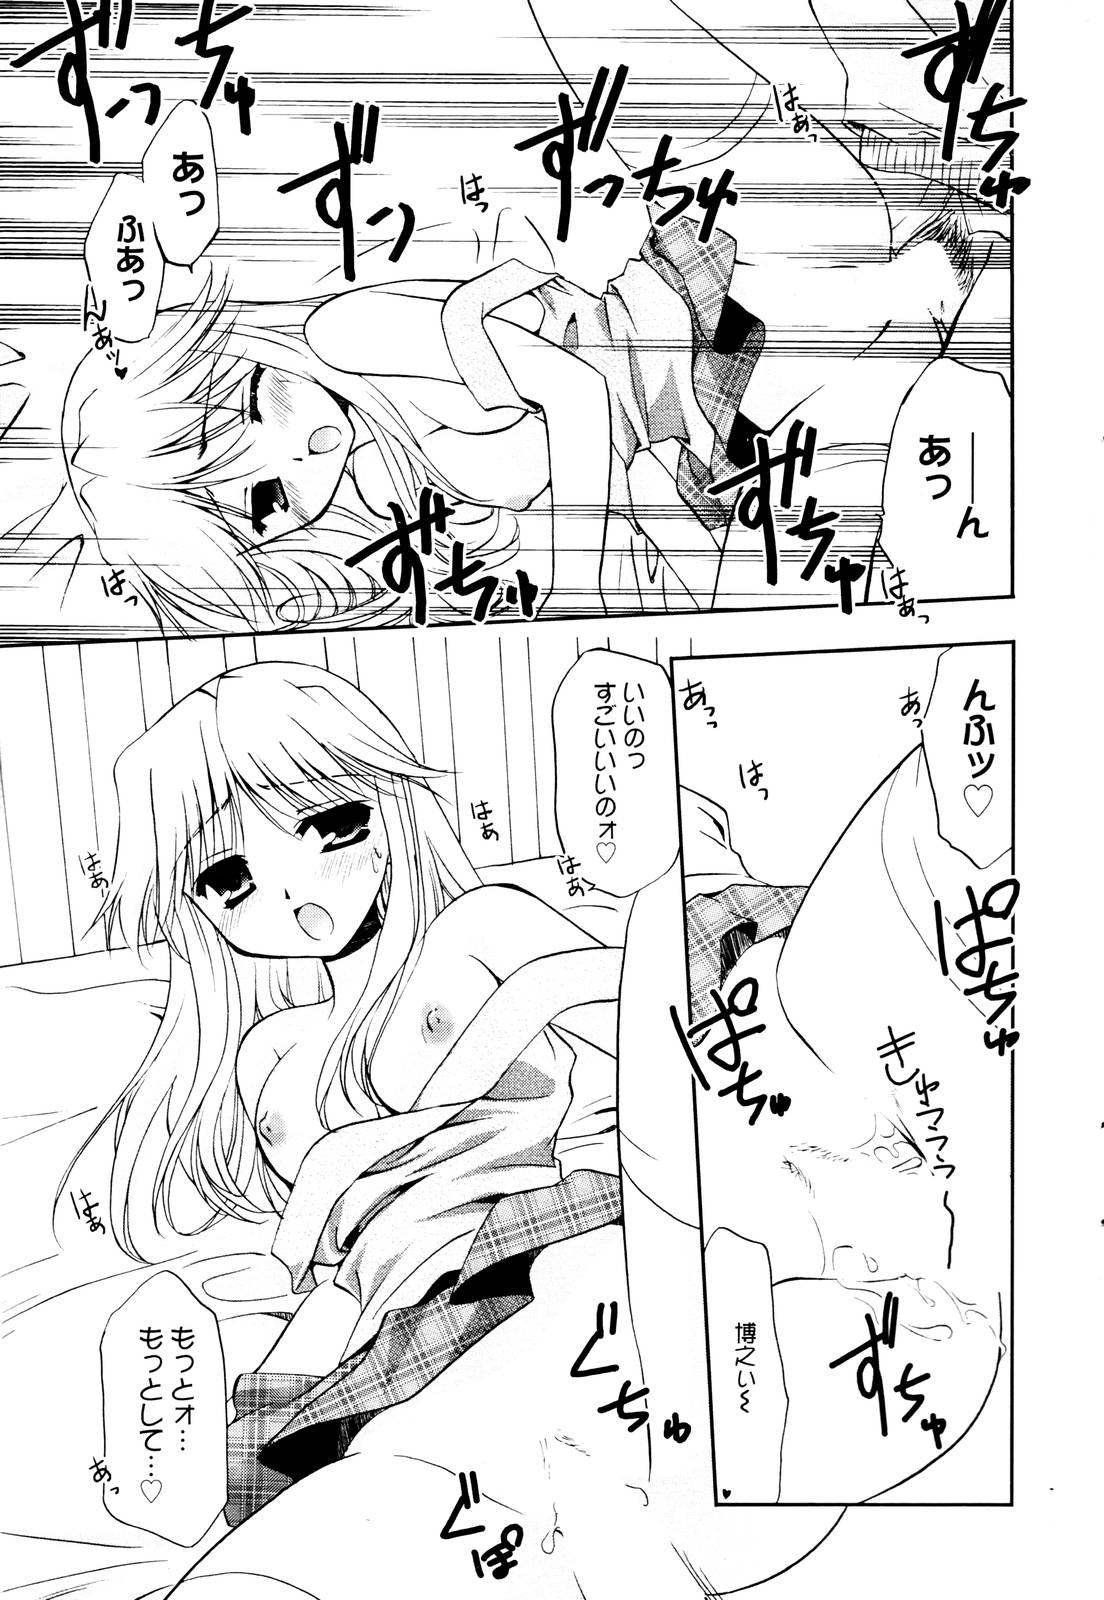 Manga Bangaichi 2006-01 page 35 full